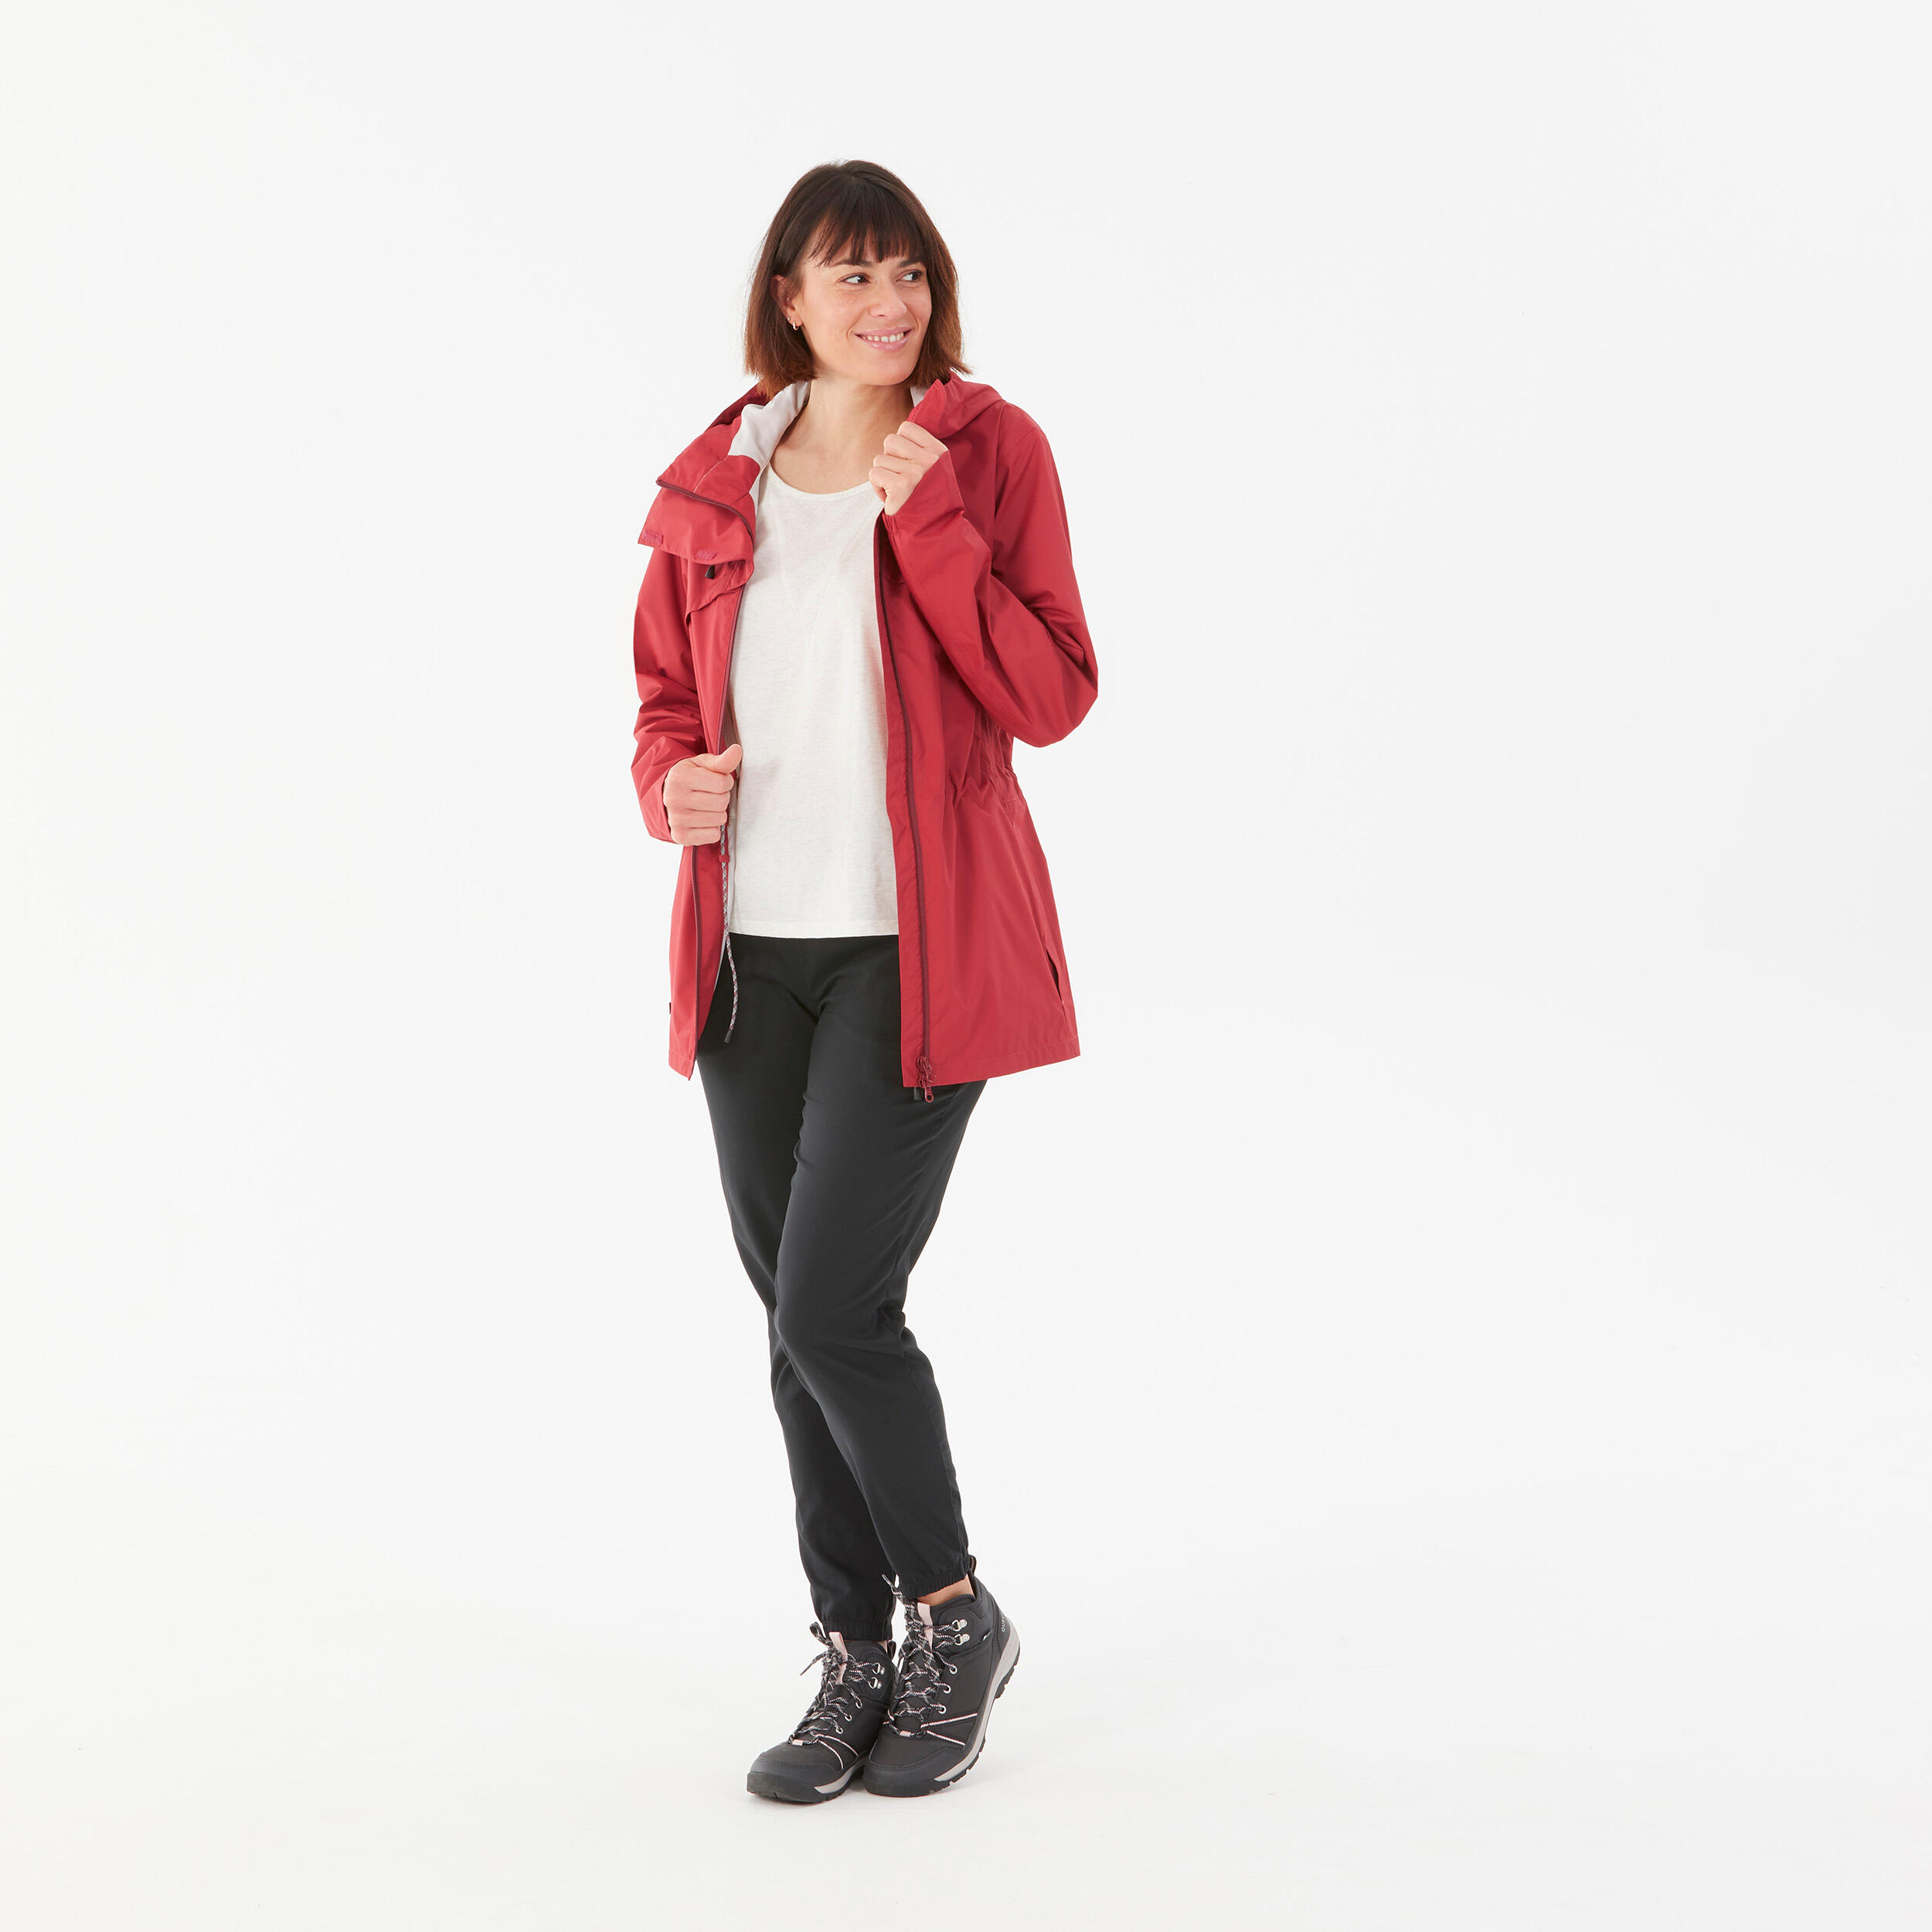 Hiking Raincoat - NH500 Waterproof Jacket - Women - Ruby Red 2/9